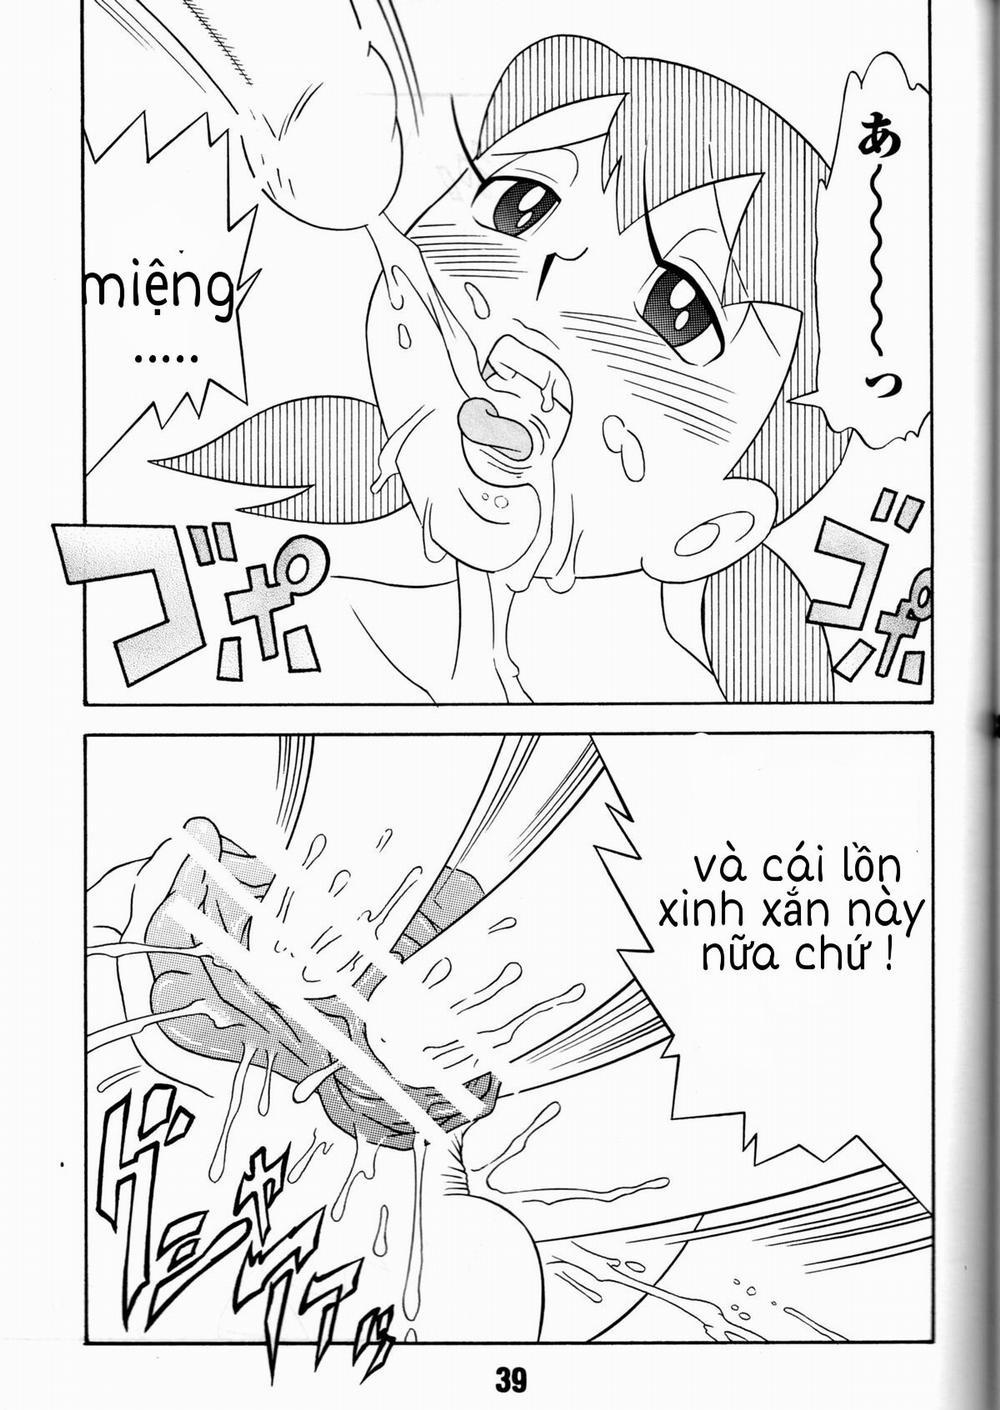 Tuyển Tập Doraemon Doujinshi 18+ Chương 7 Xuka v m g u Trang 31